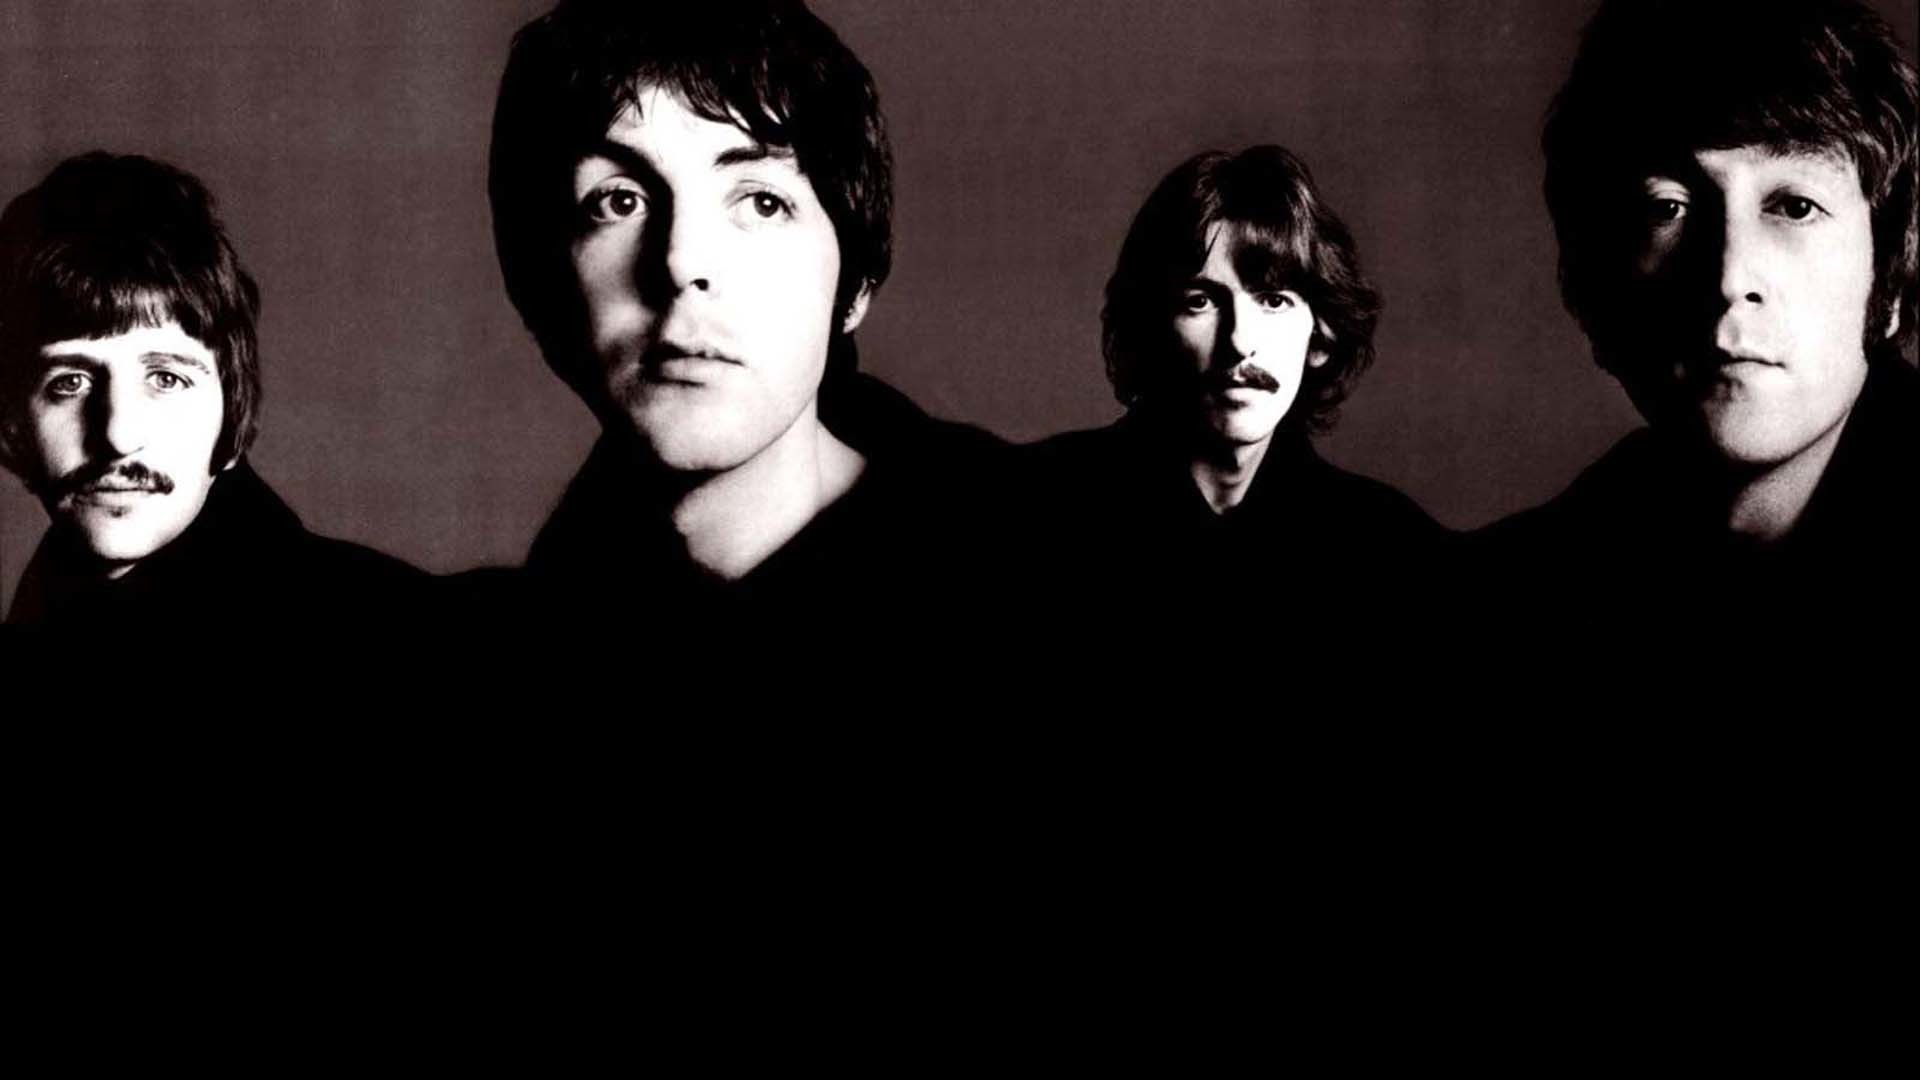 1920x1080 The Beatles Wallpaper iPhone - WallpaperSafari